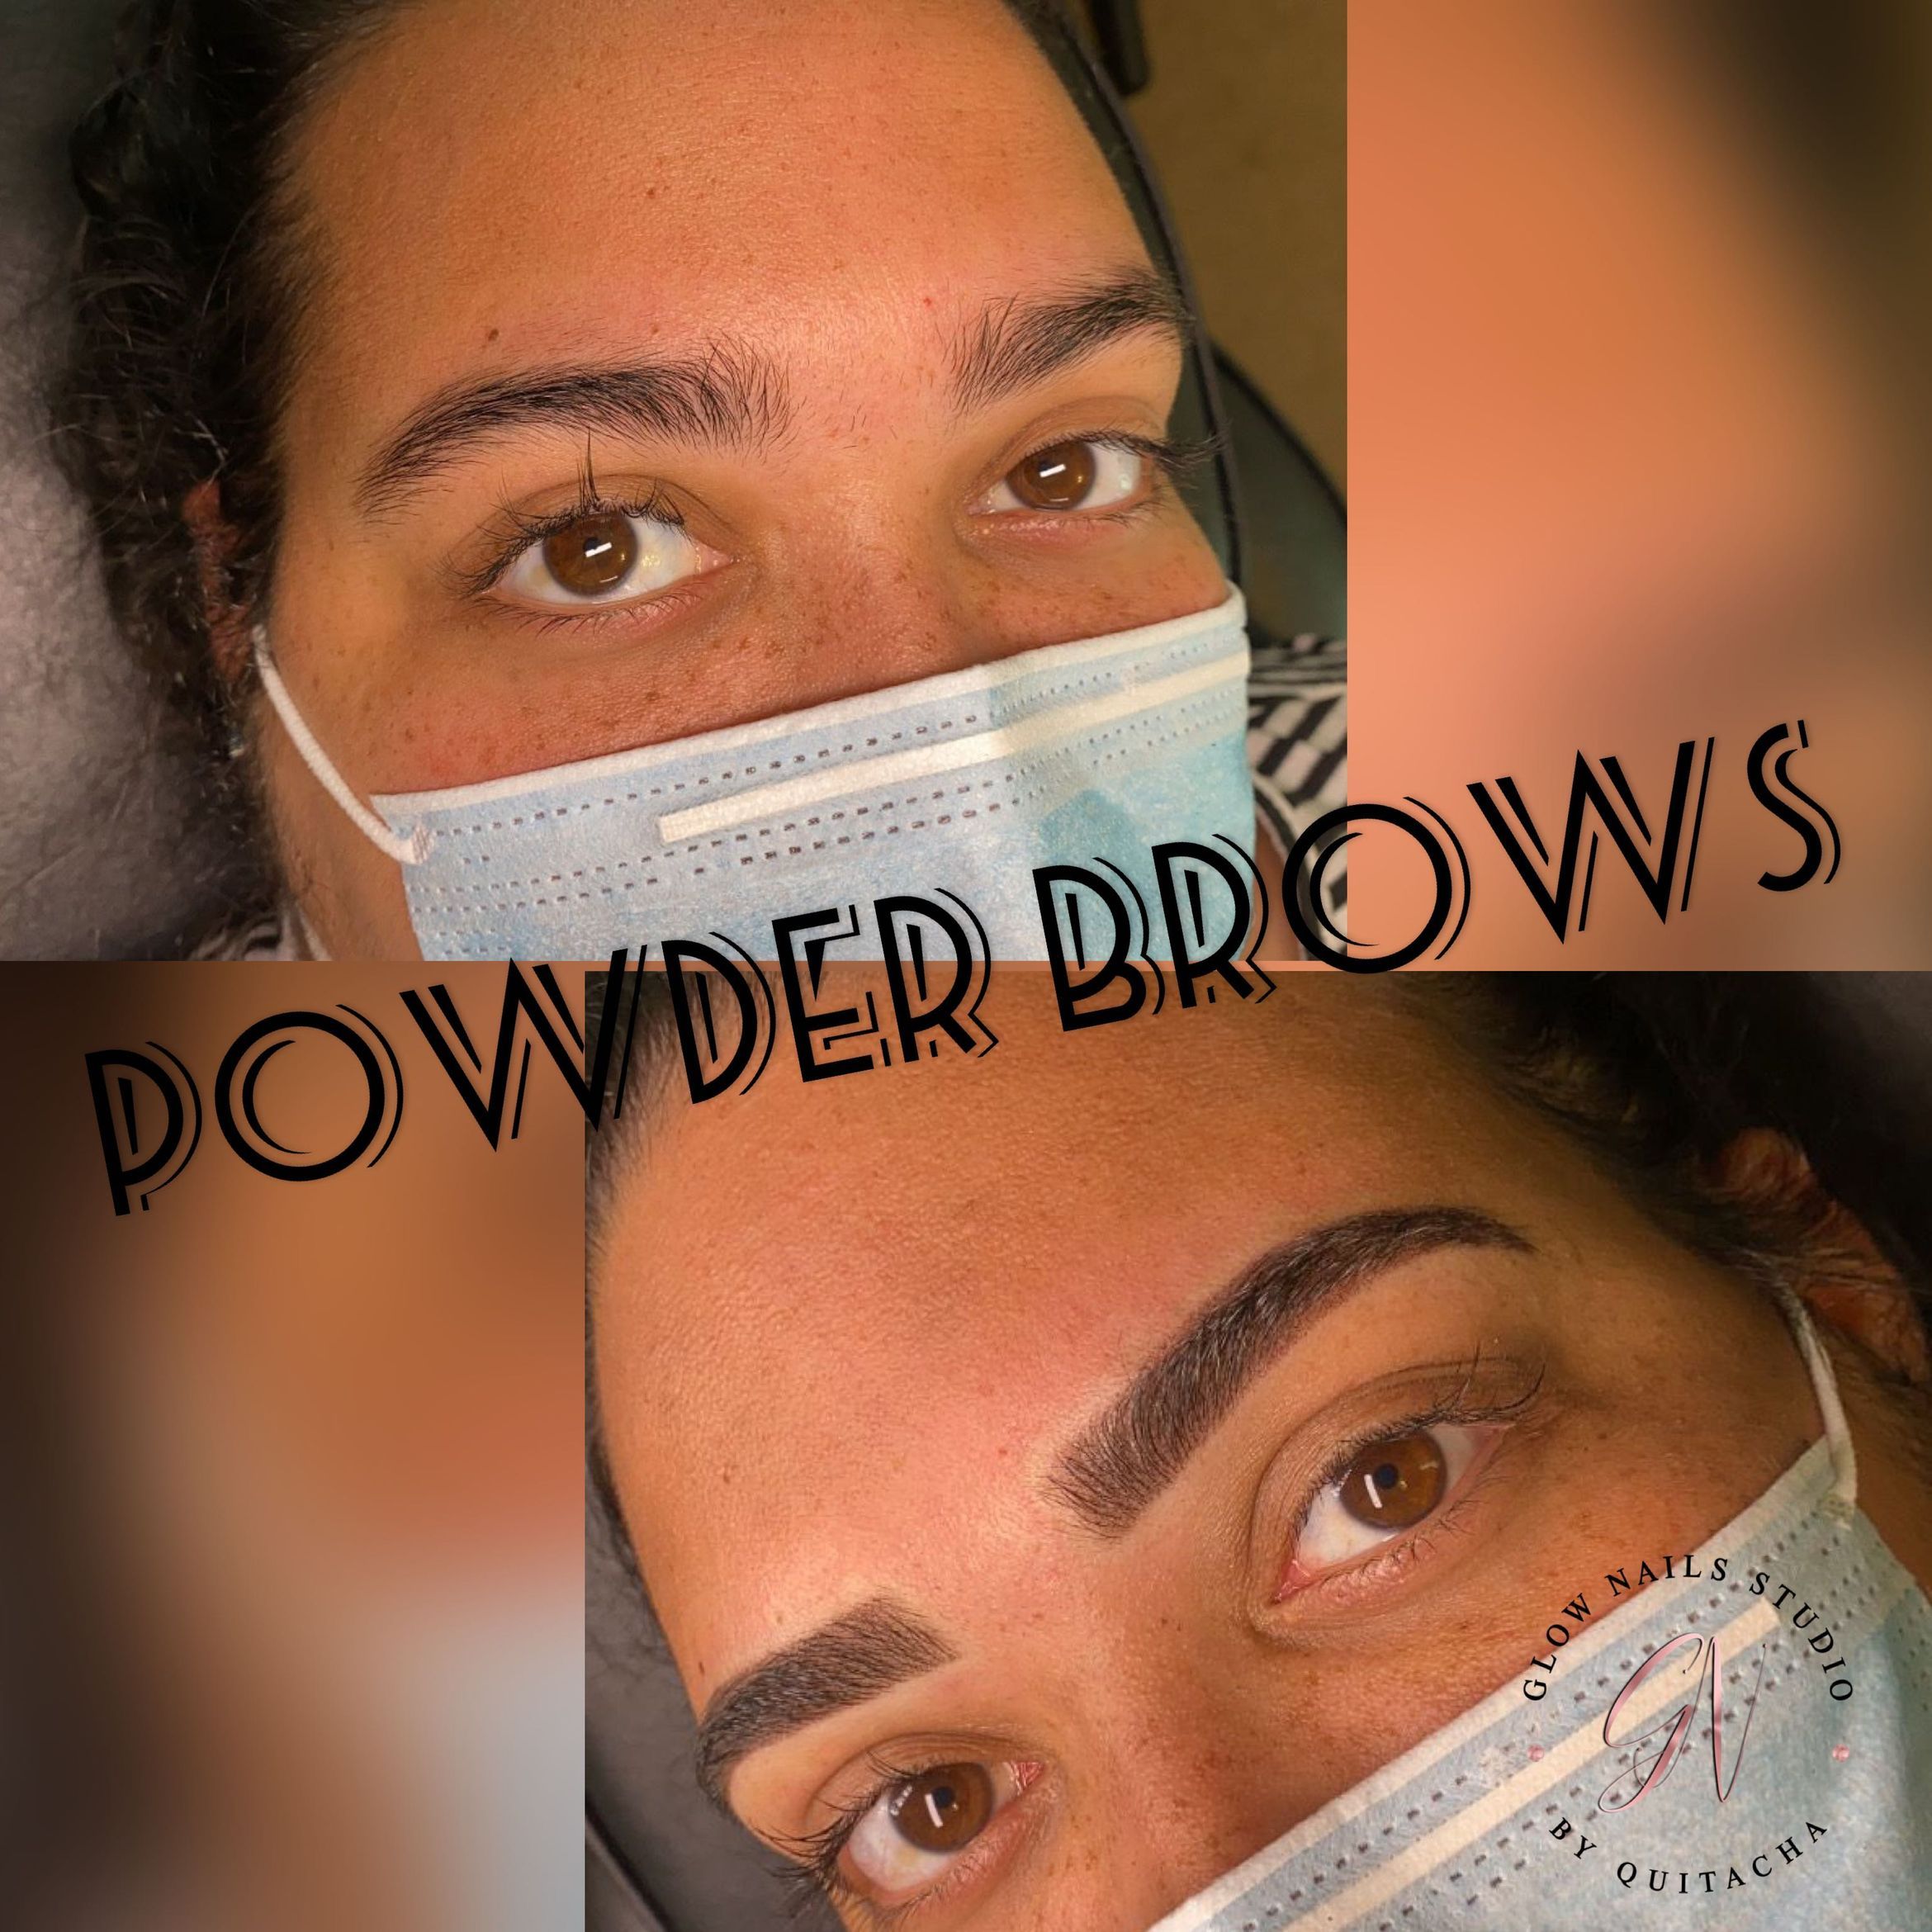 Powder brows portfolio